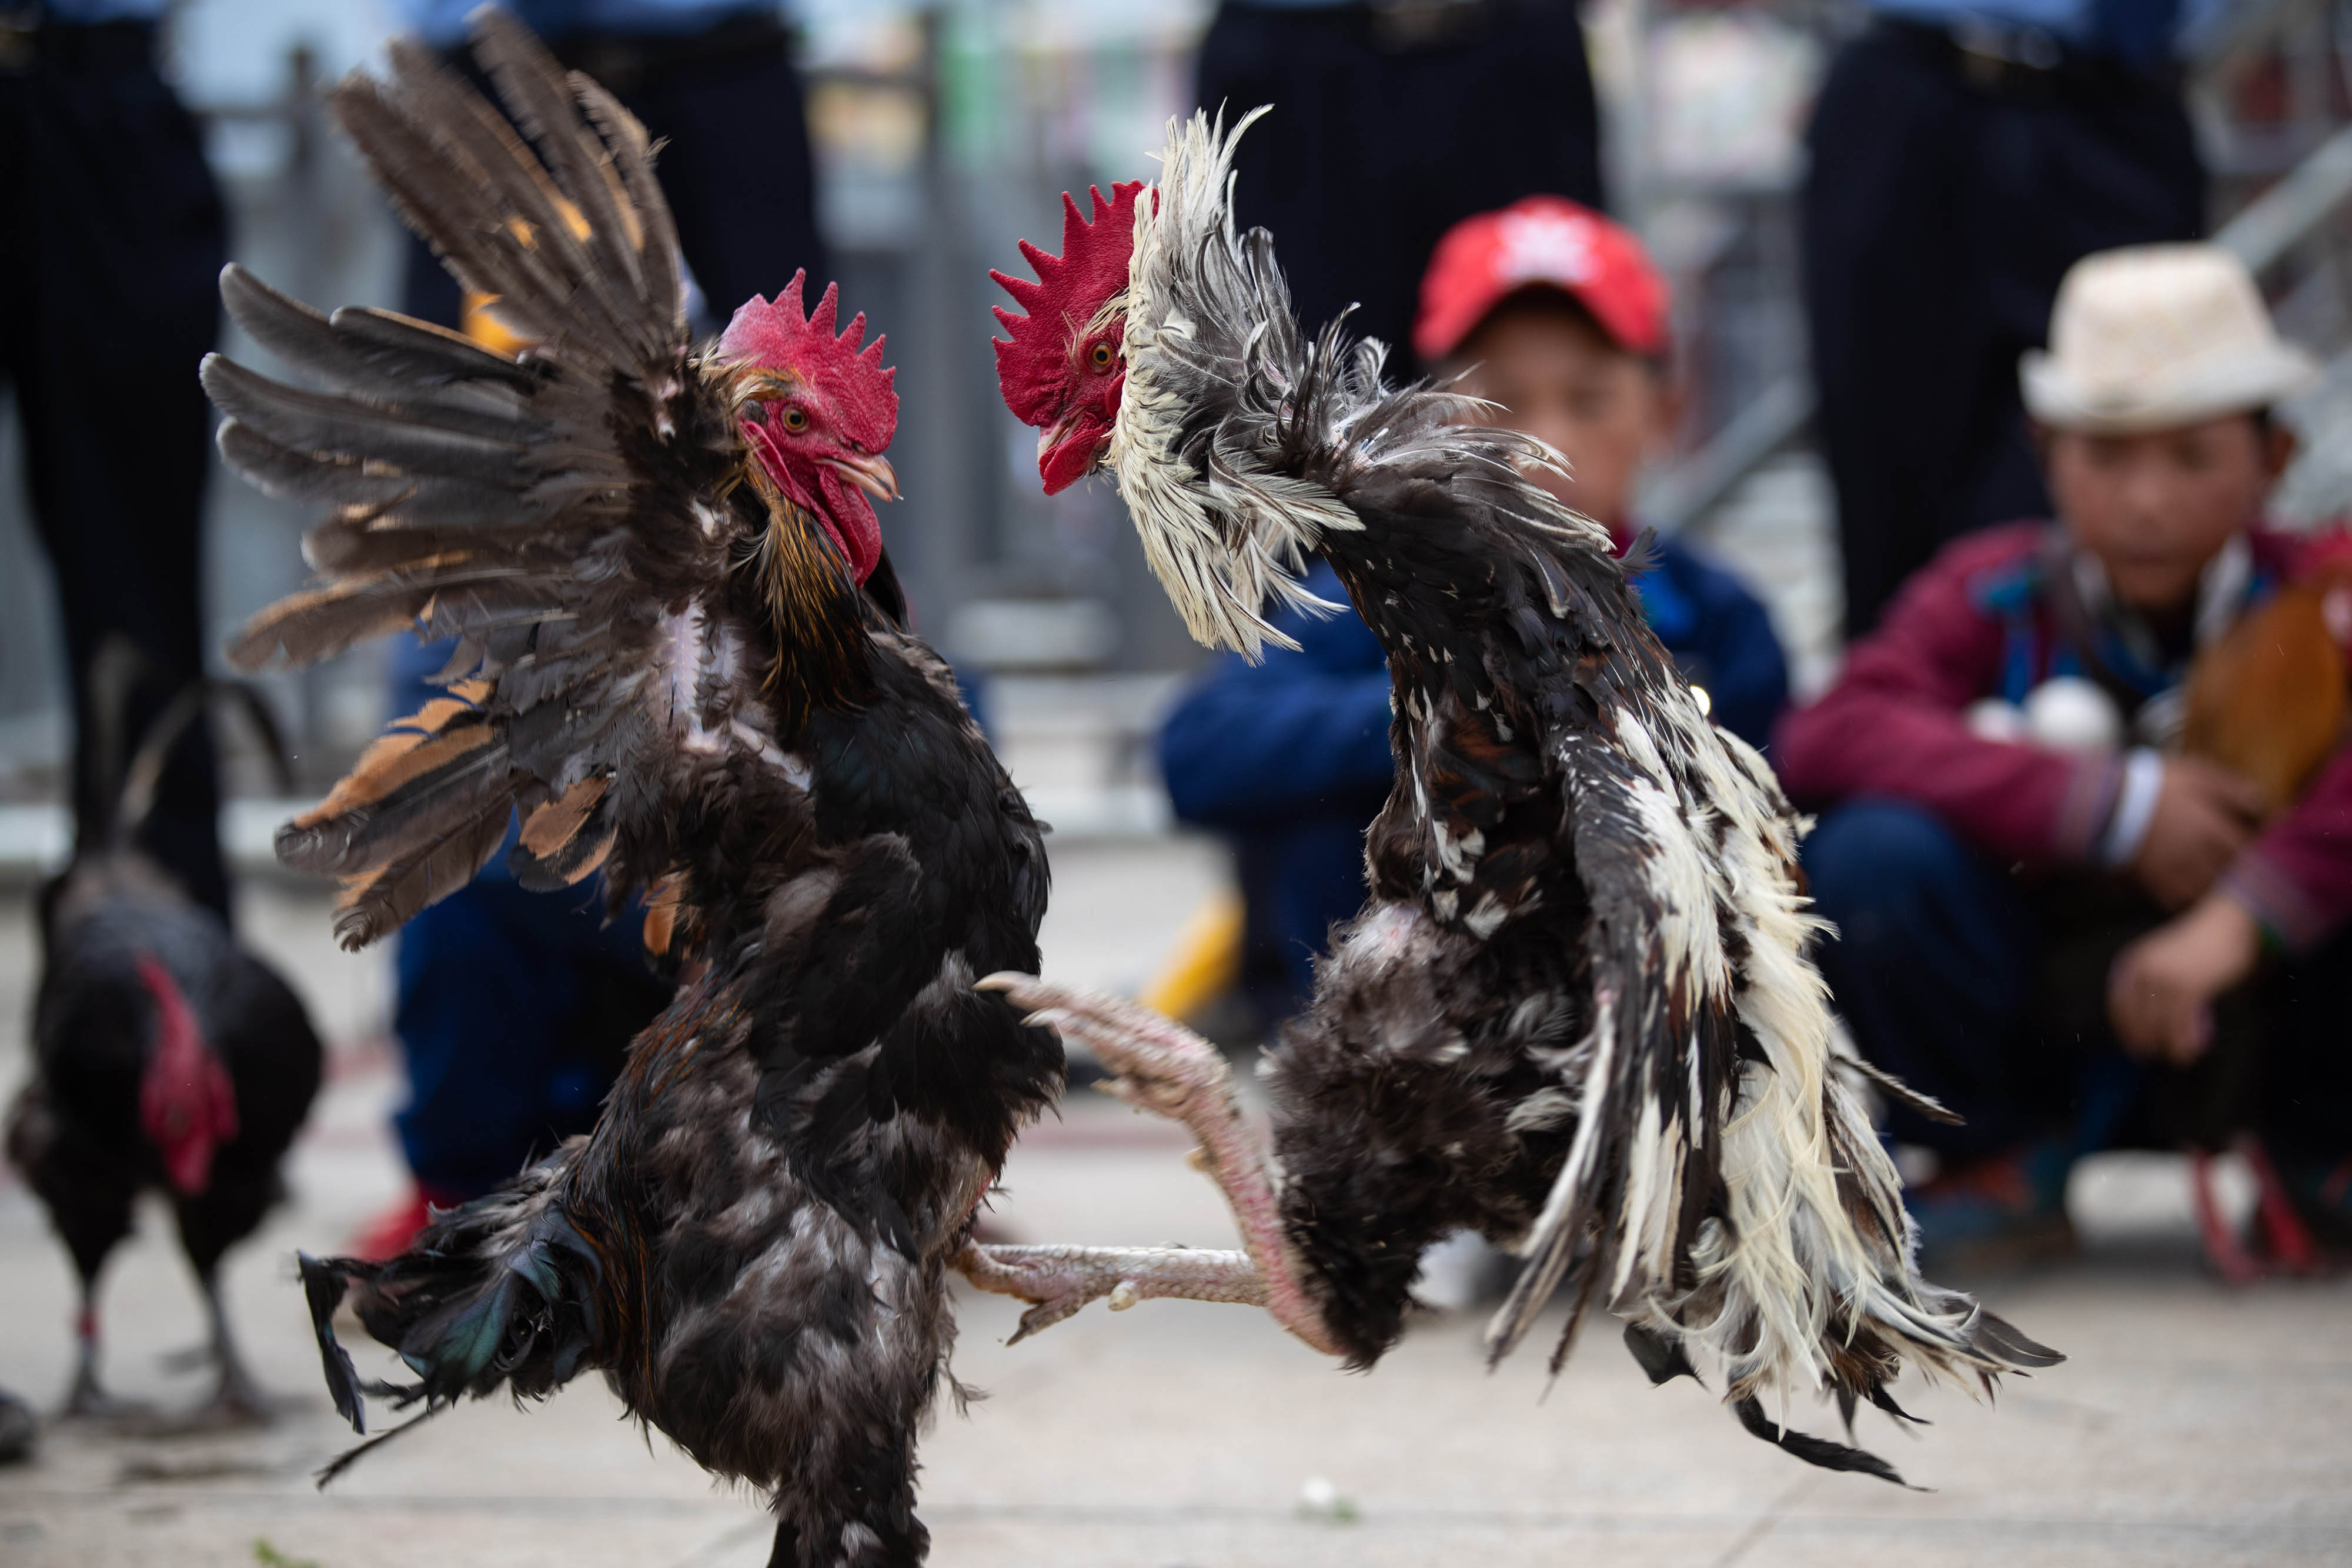 7月21日,在布拖县县城火把广场,传统民俗竞技比赛斗鸡吸引一群彝族